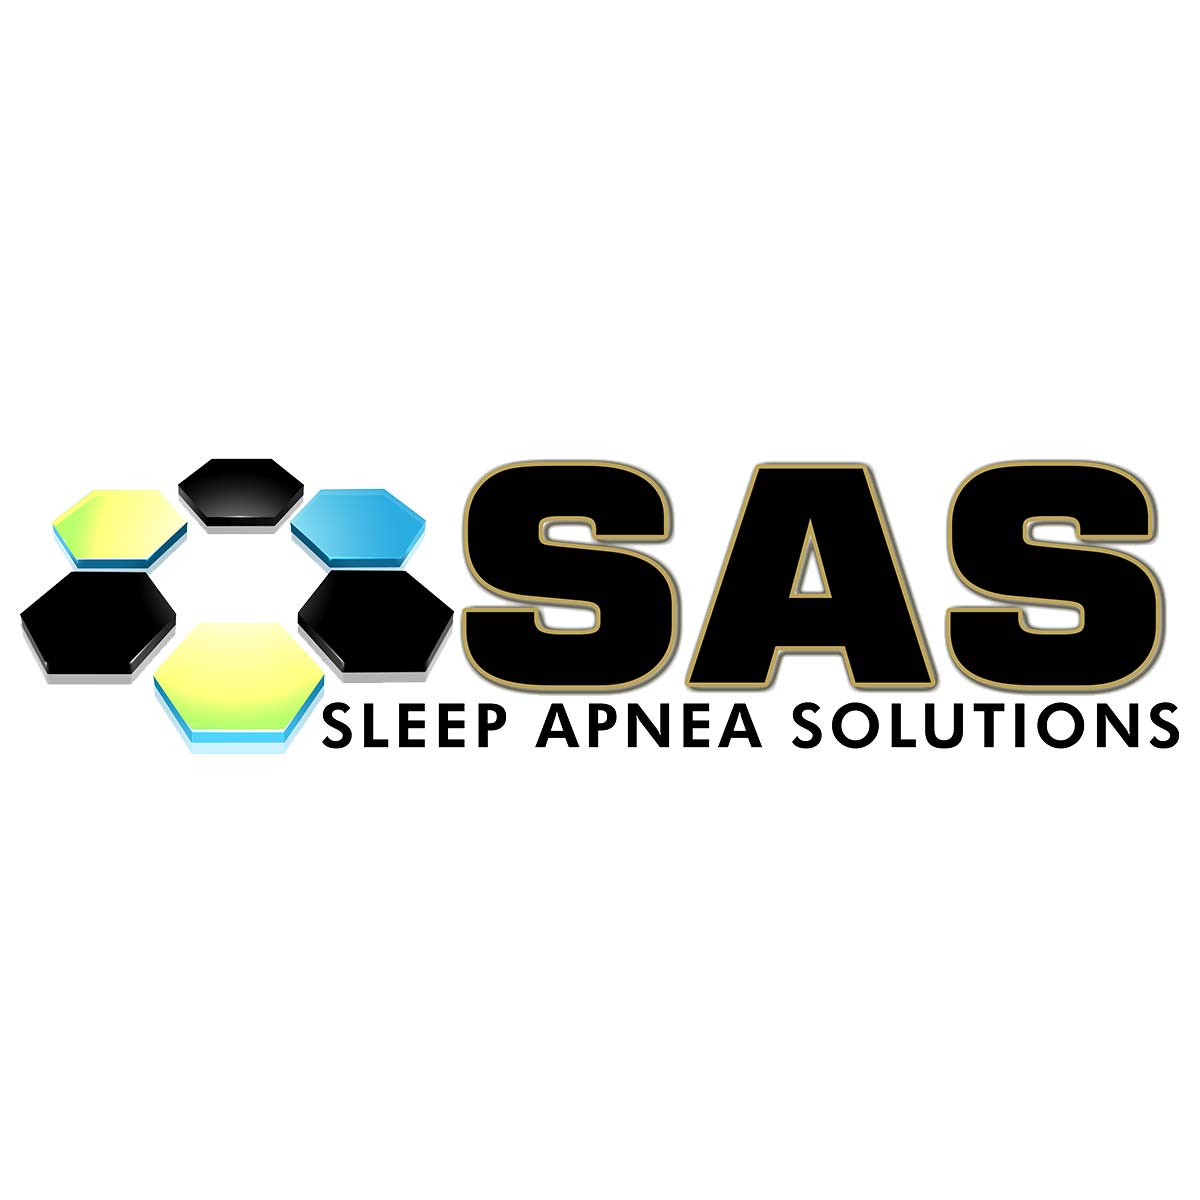 (c) Sleepapneasolutions.net